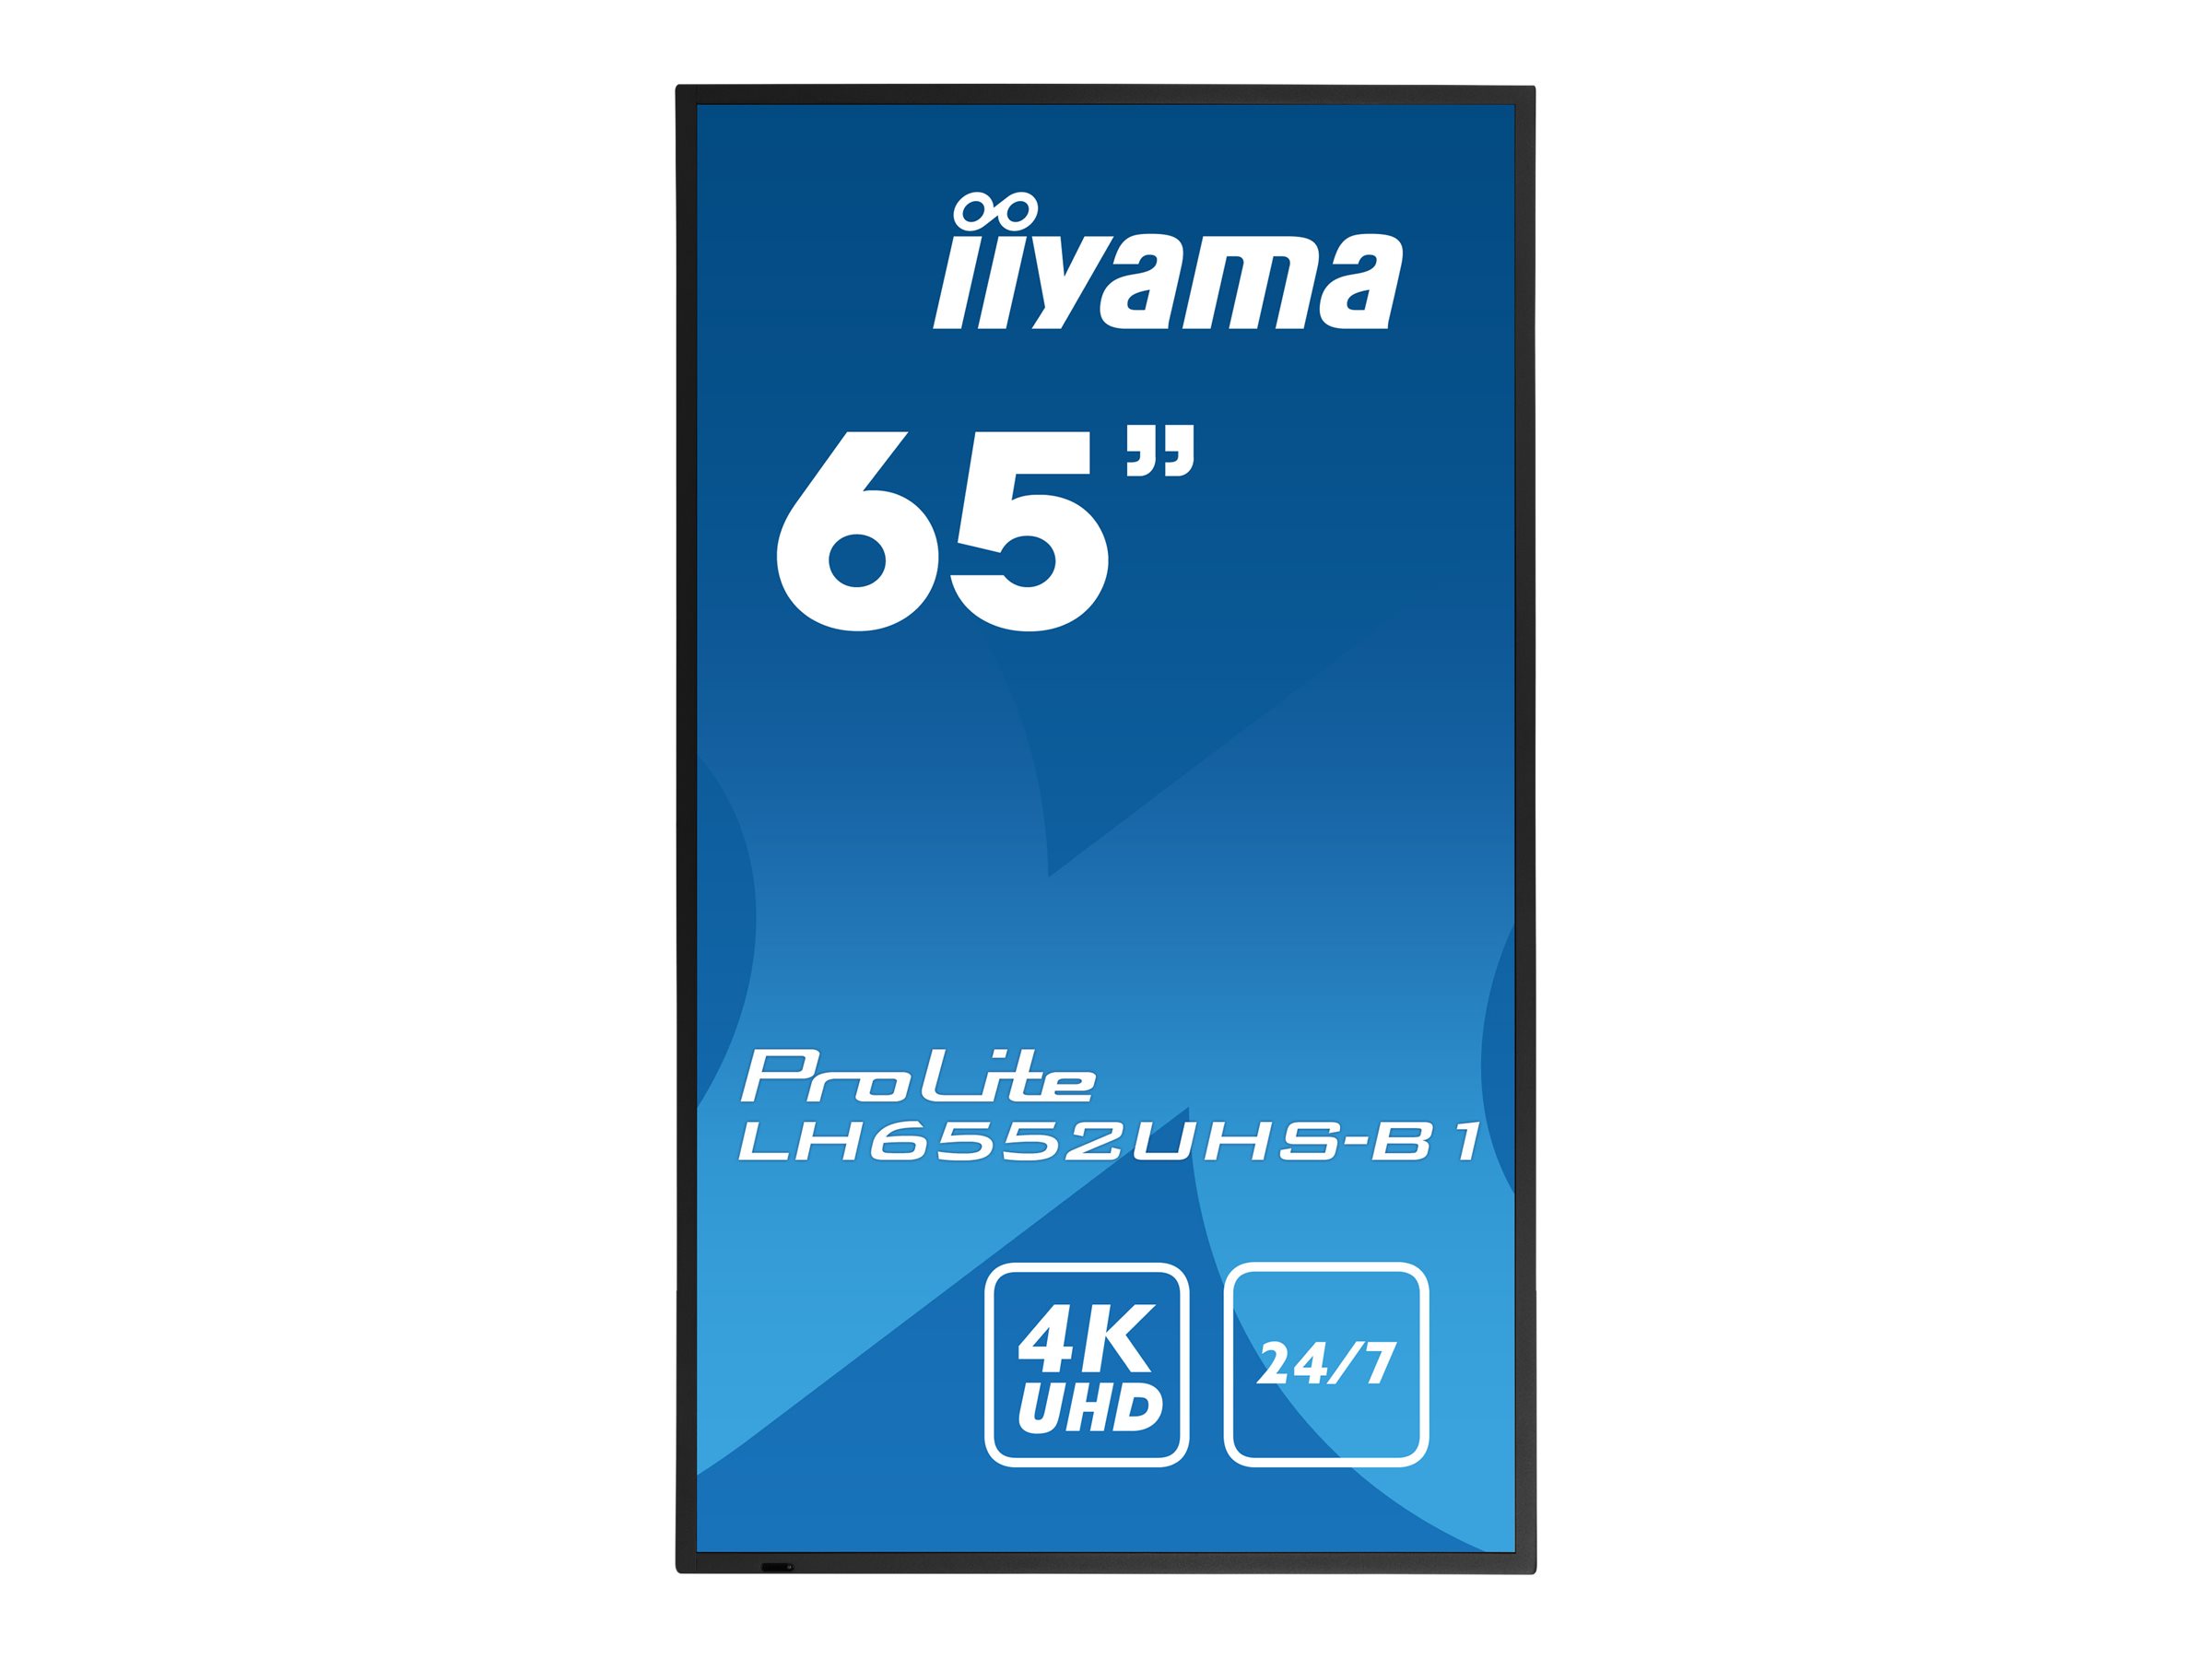 Iiyama LH6552UHS-B1